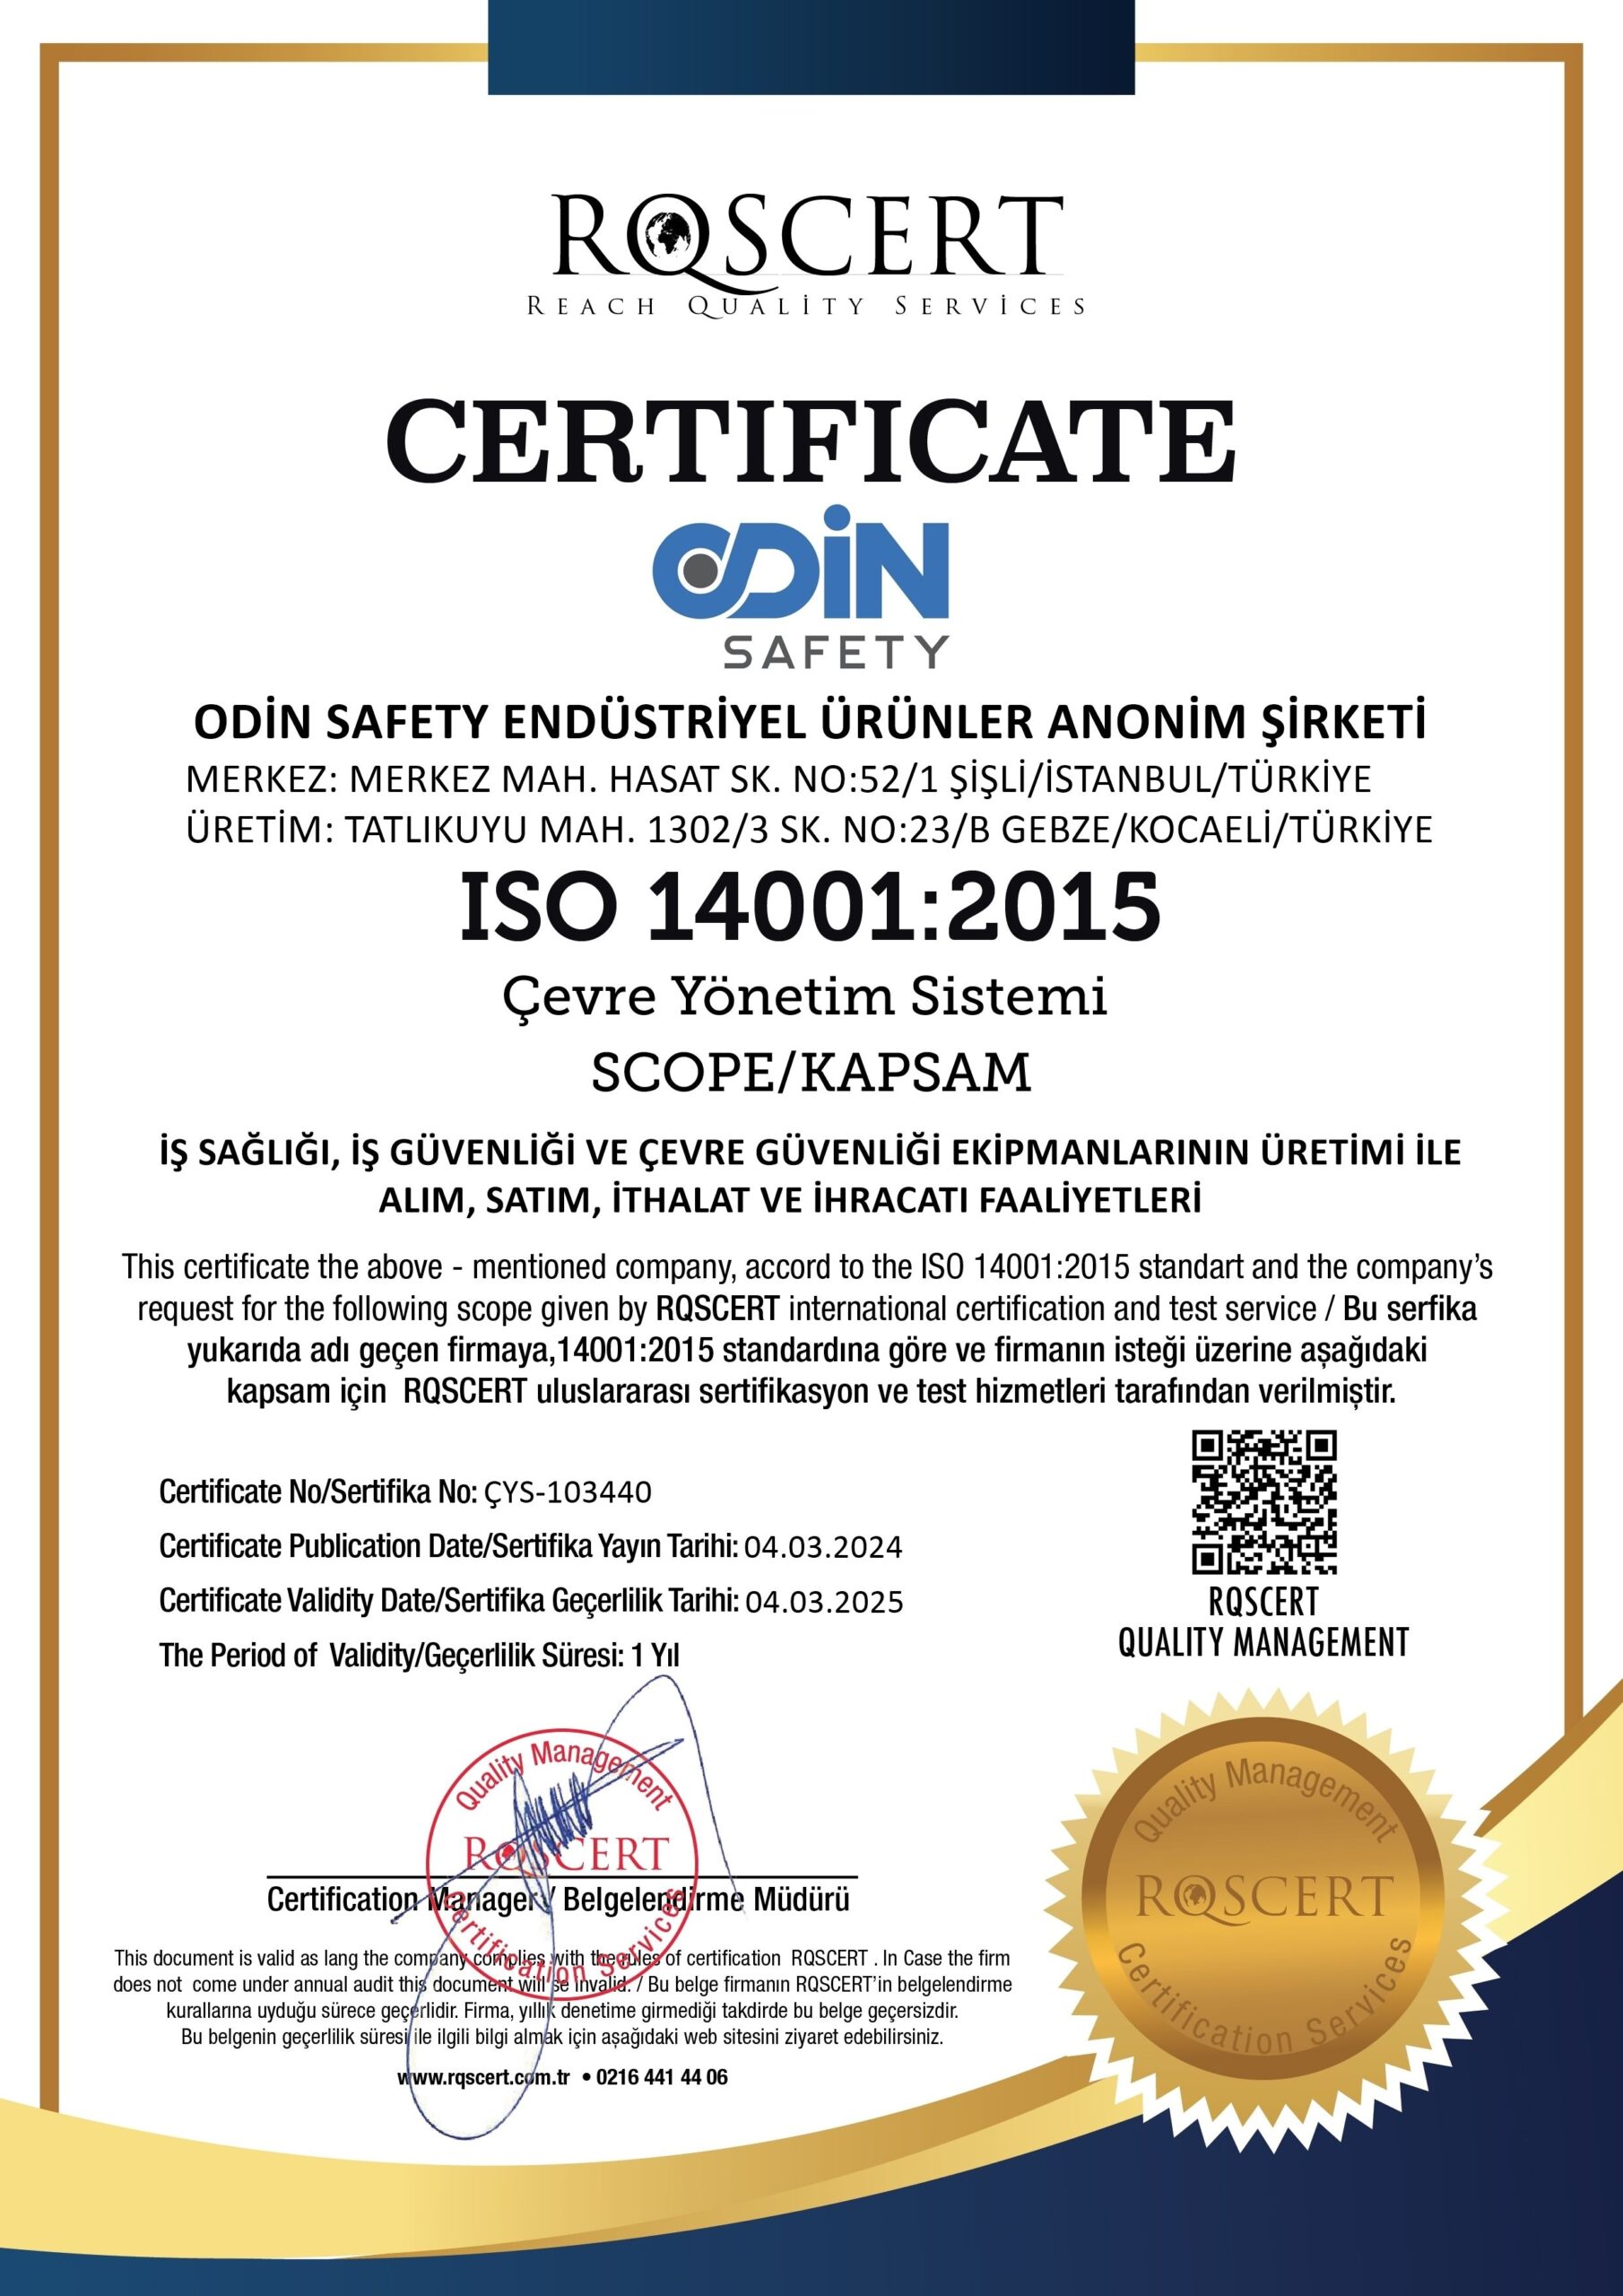 ODİN SAFETY ISO 14001